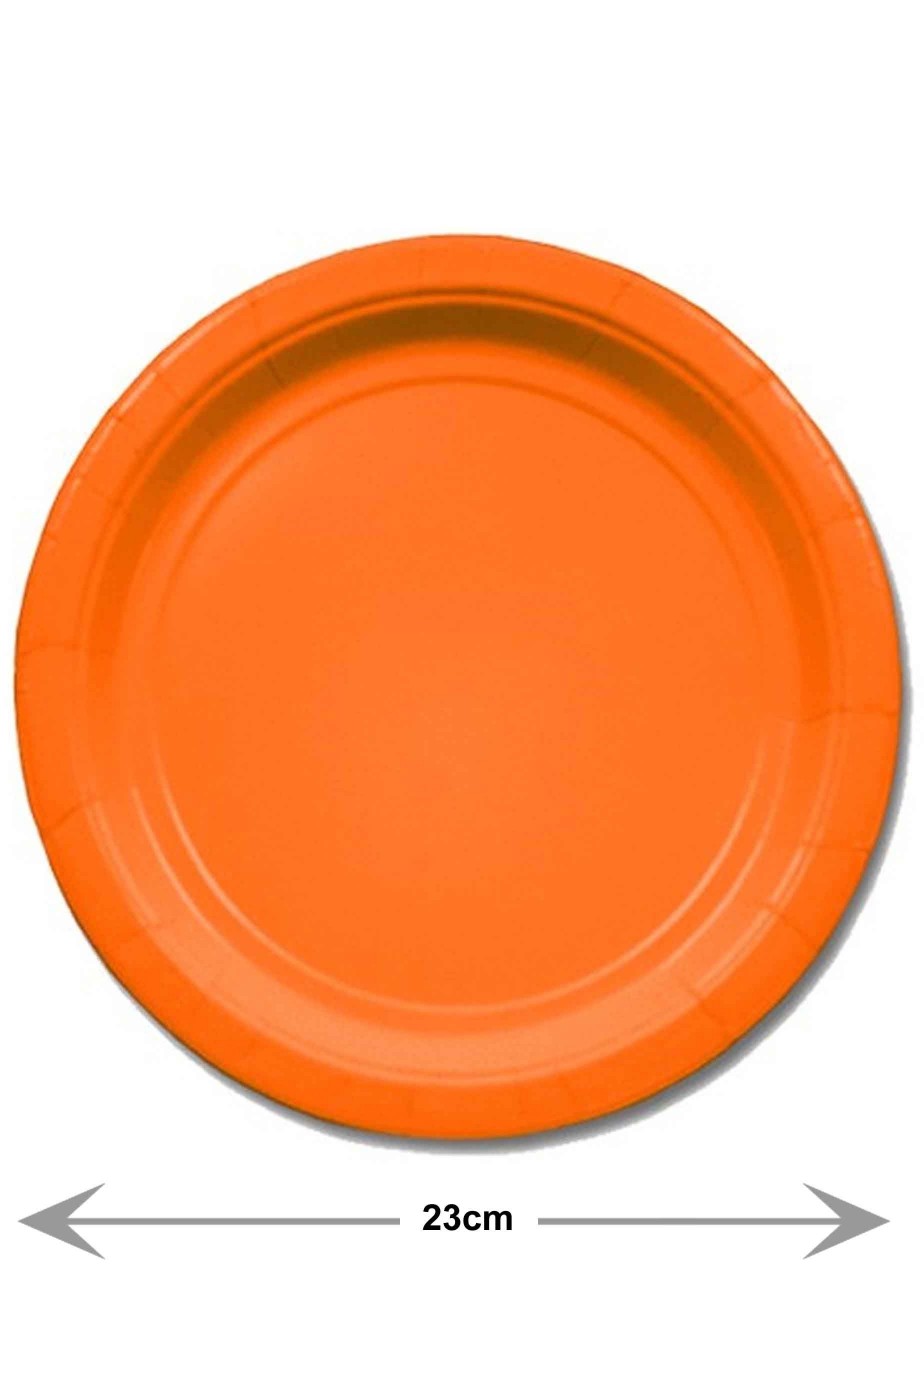 Piatti Party carta arancioni piani grandi 8 piatti, 23cm